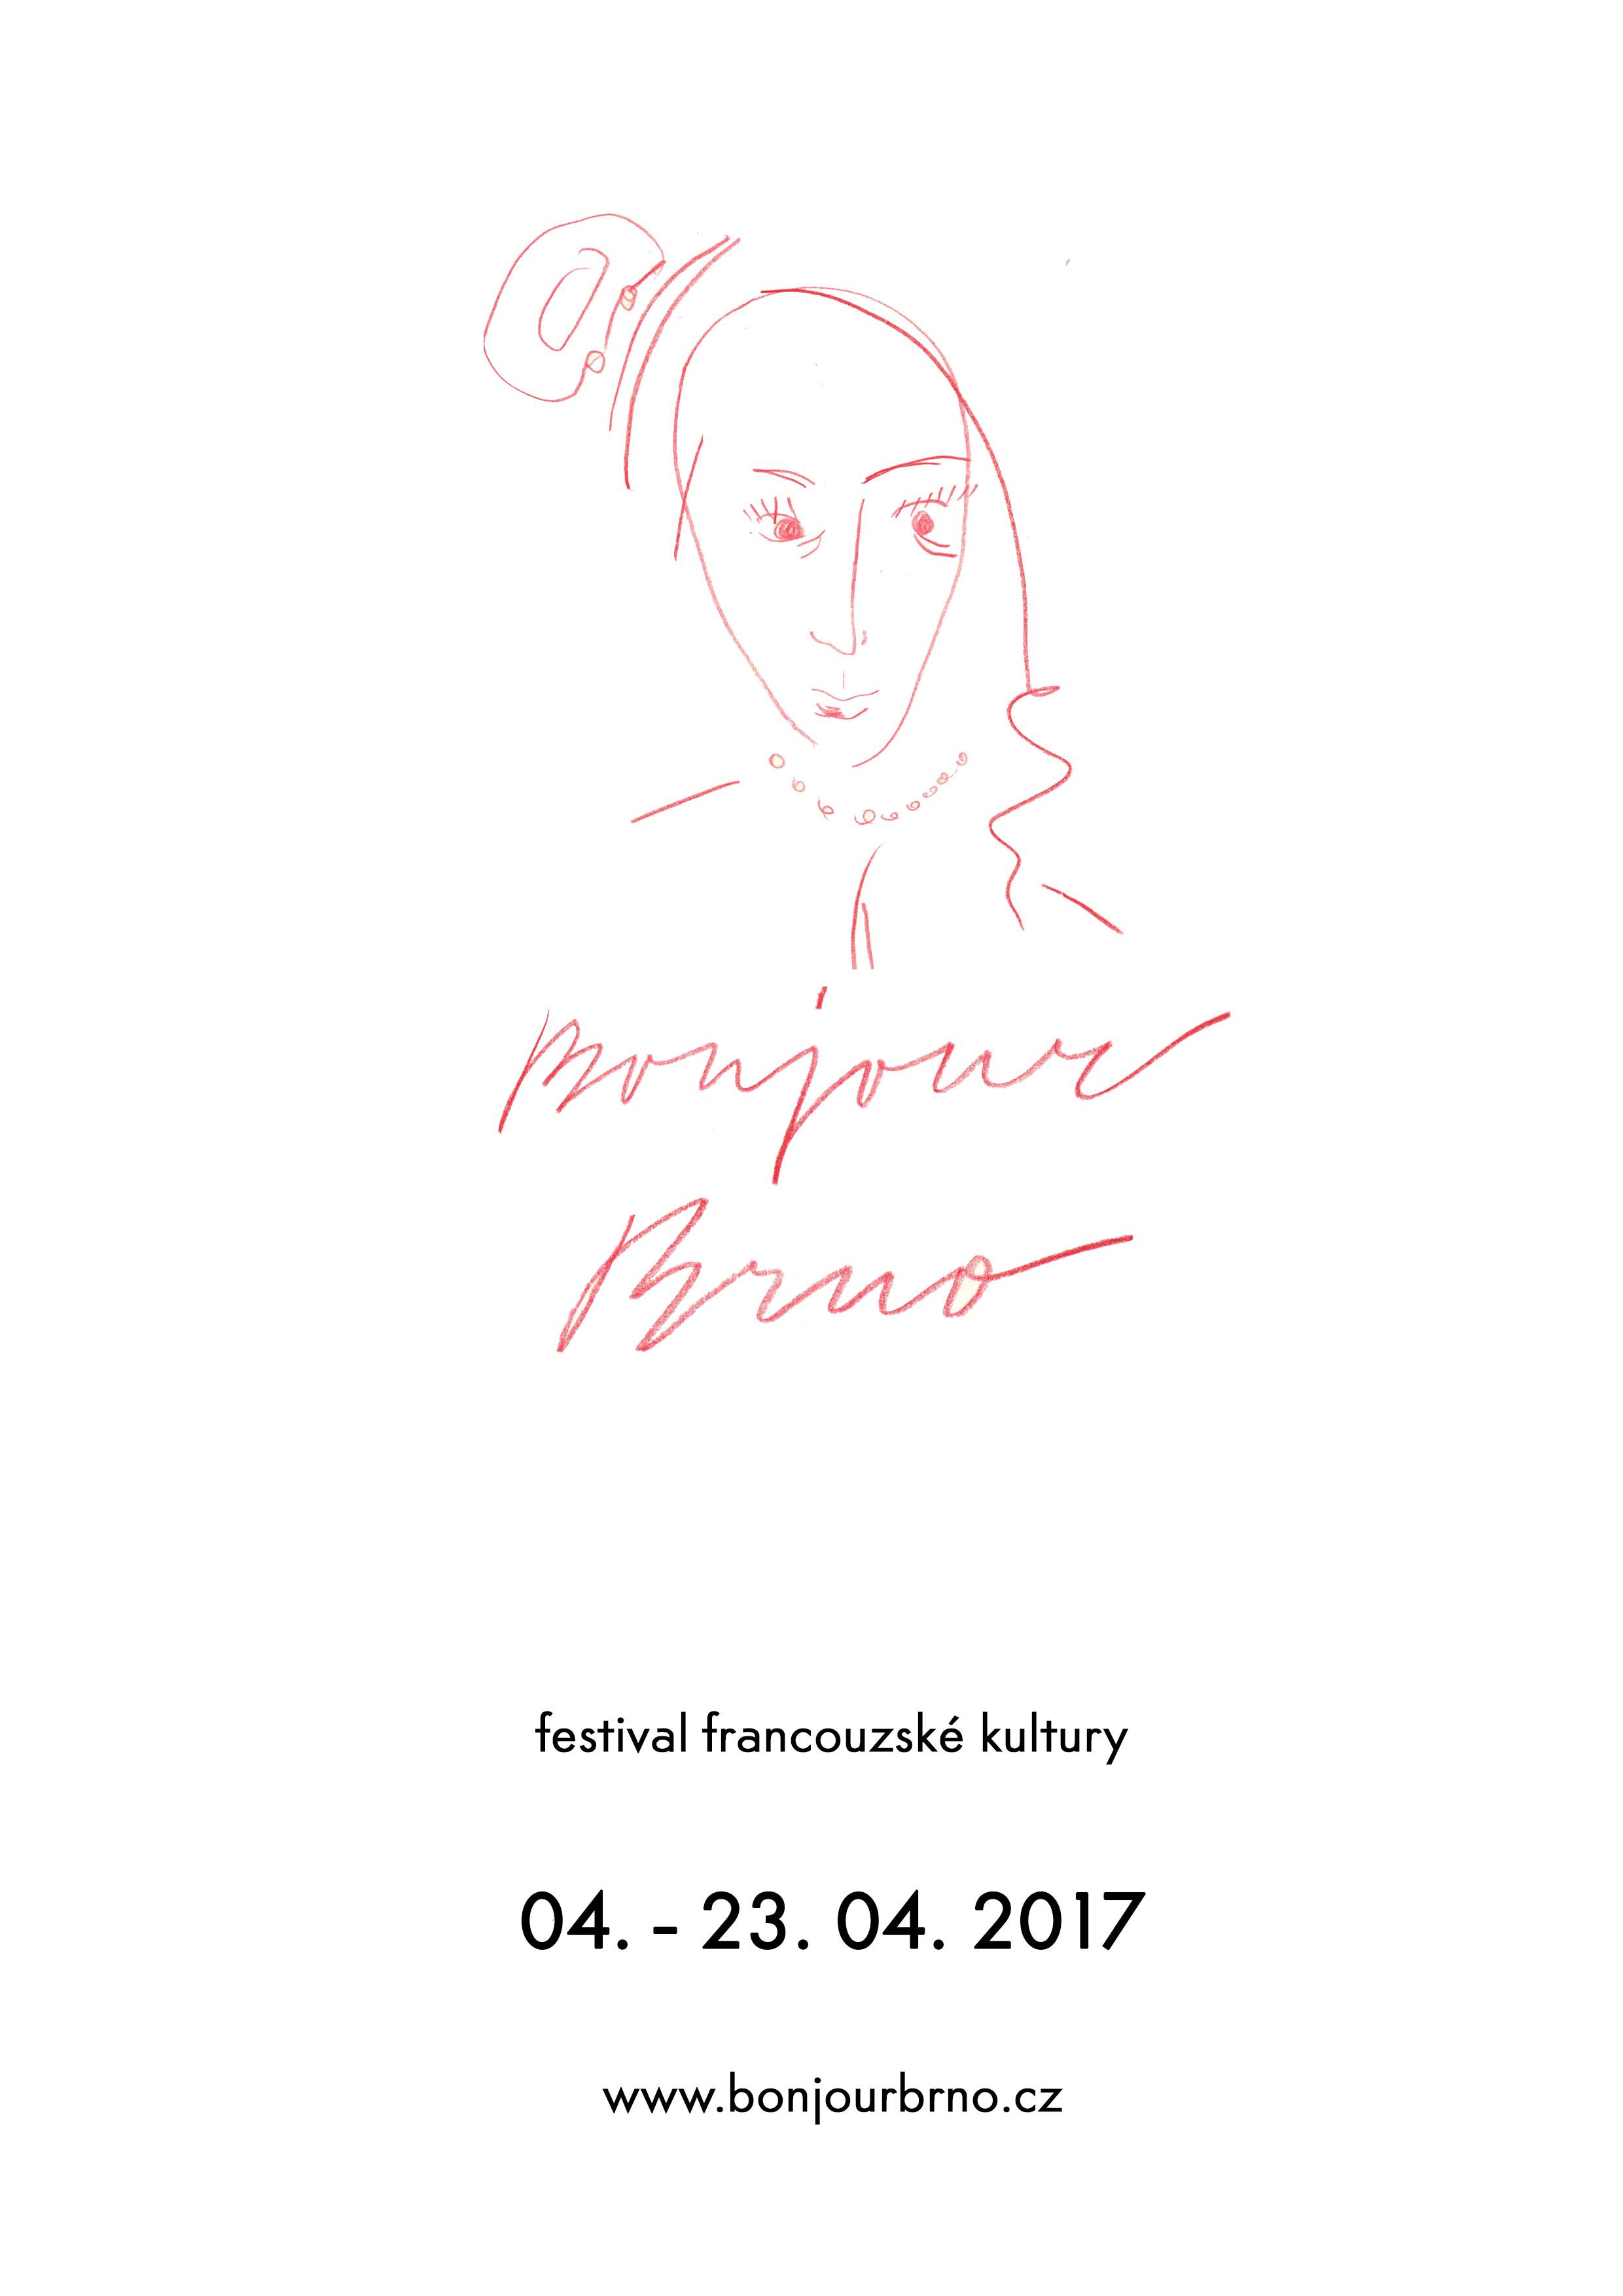 Festival Bonjour Brno 2017 - Od 4. dubna 2017 10:00 do 23. dubna 2017 23:30